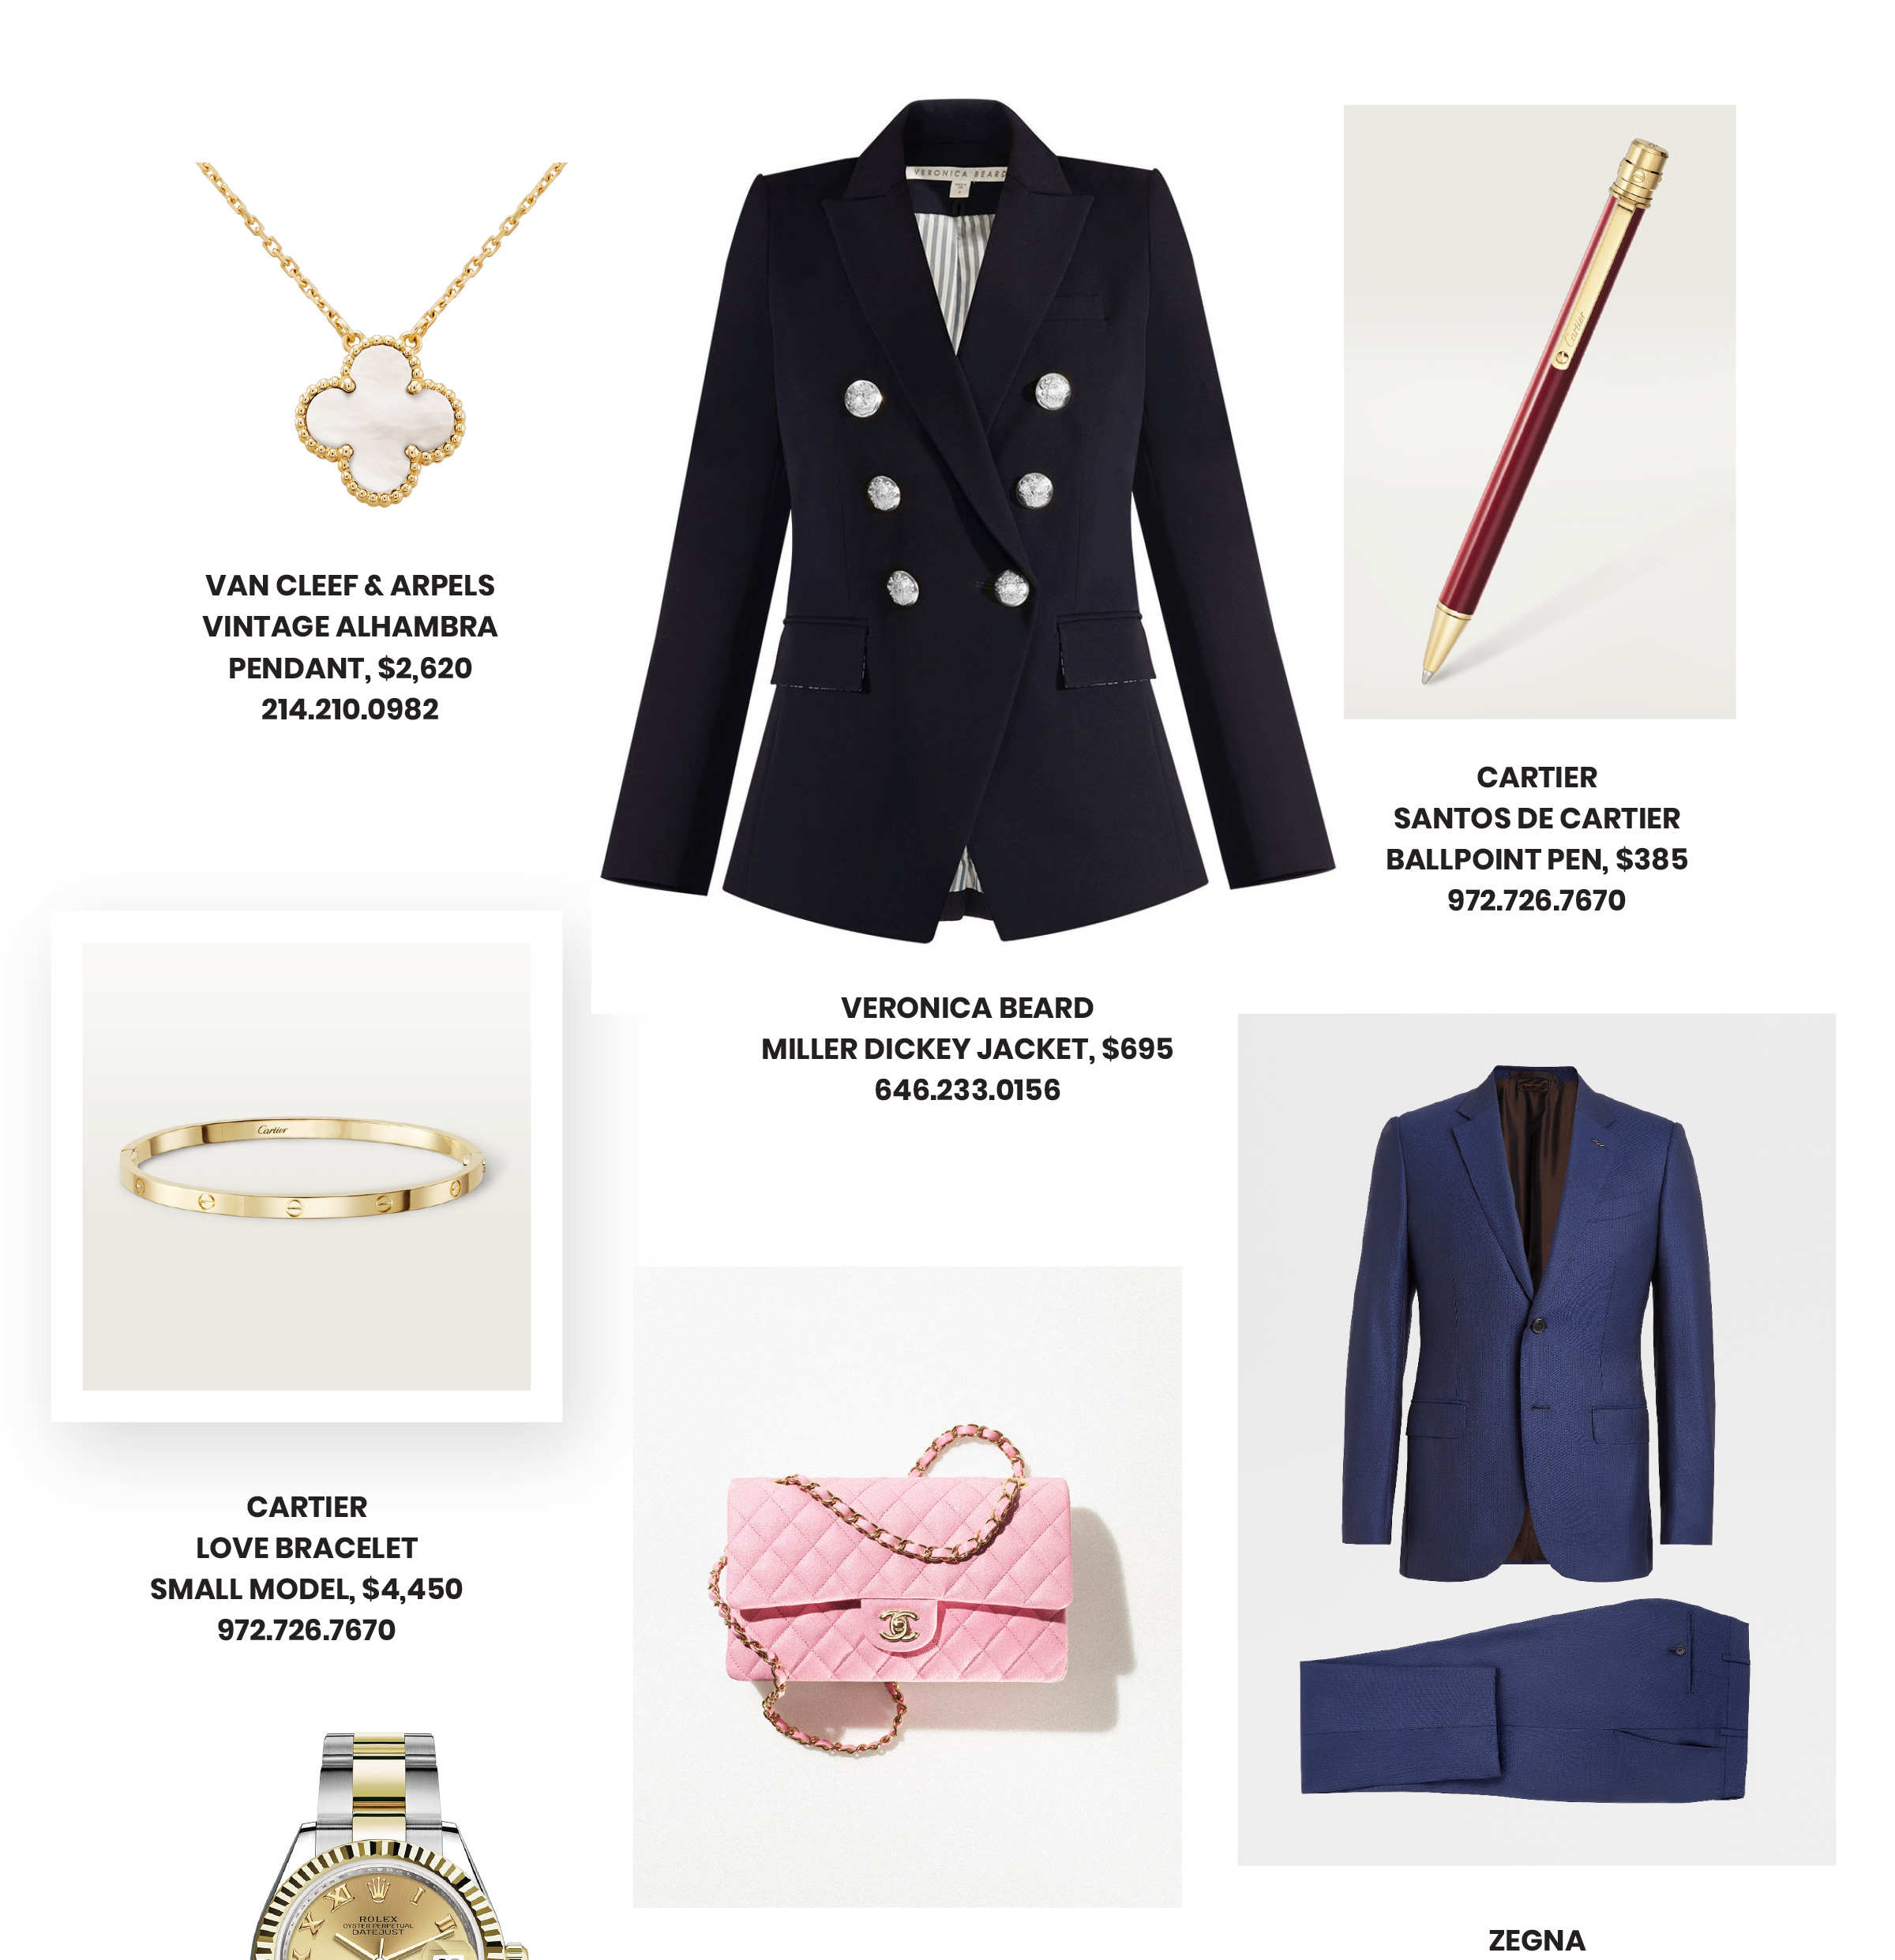 Guía de regalos de graduación para niños y niñas, que incluye un reloj Rolex, un bolso Chanel, un estuche para computadora portátil Goyard y una pulsera Cartier Love